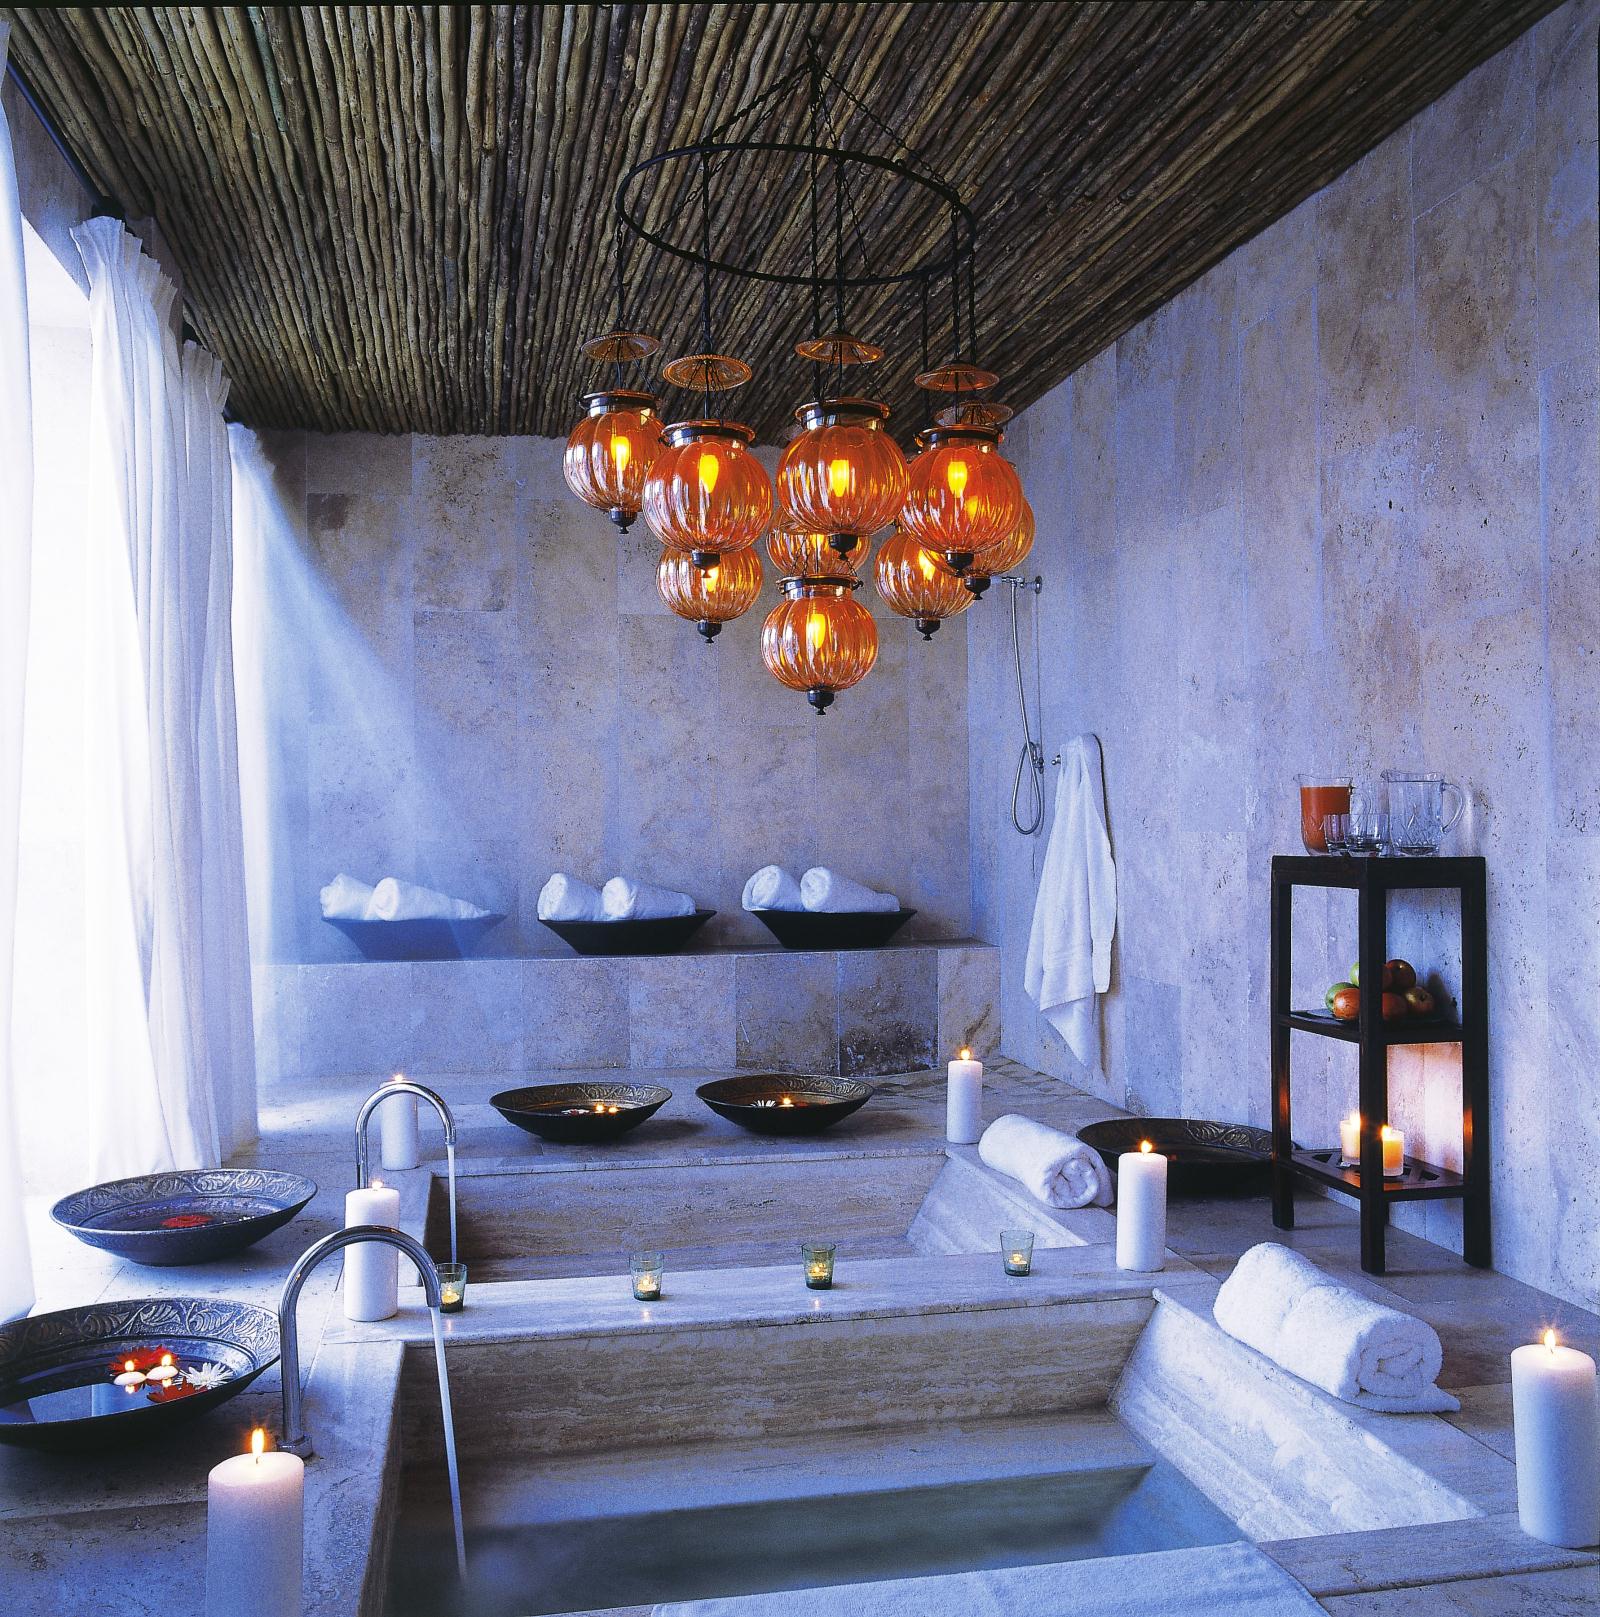 Spa Sunken Baths - Royal Malewane